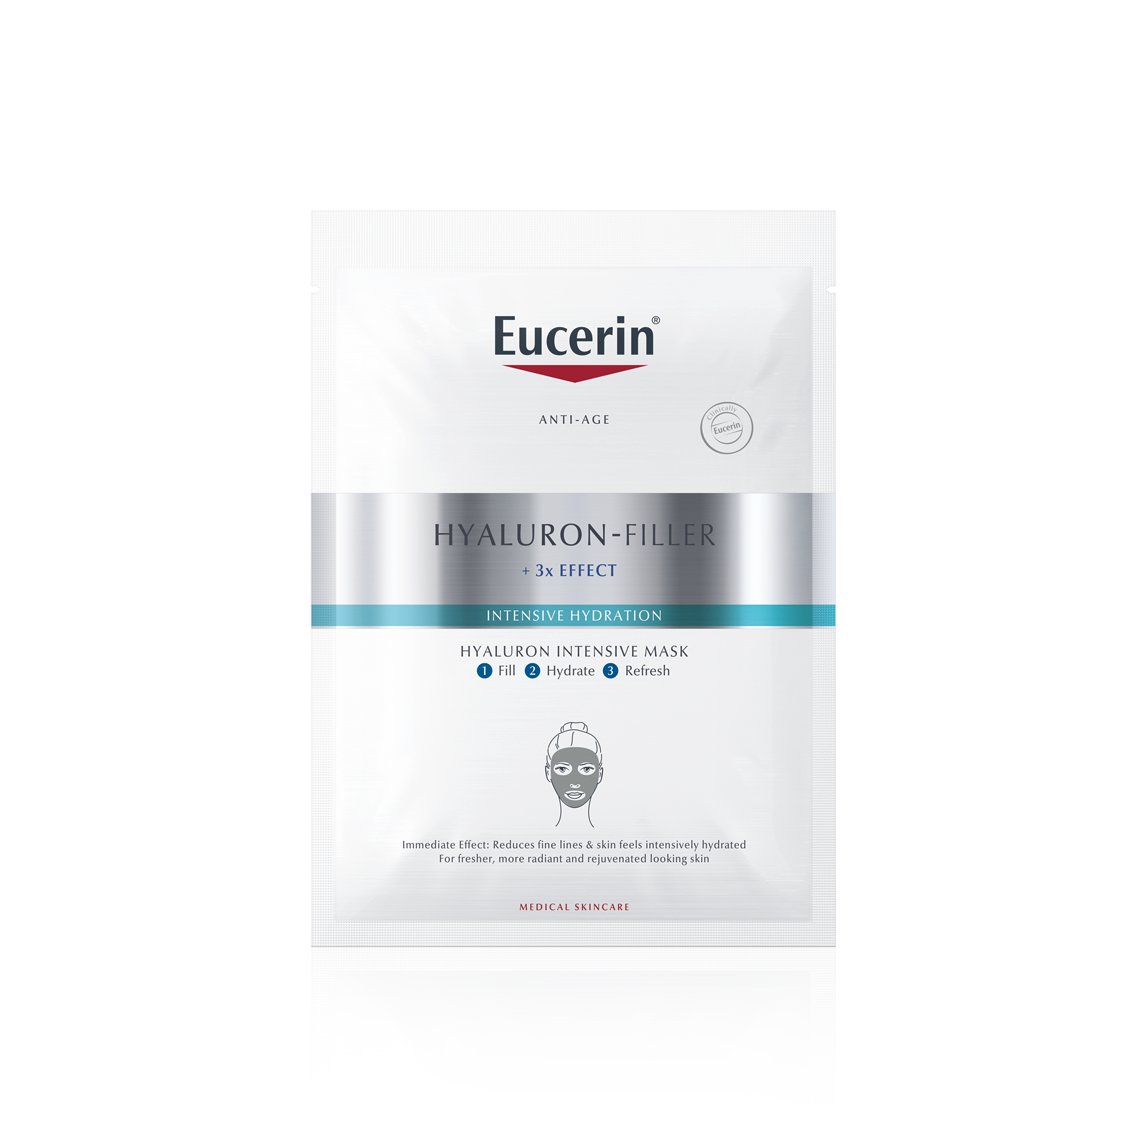 Eucerin Hyaluron-Filler + 3x EFFECT Hyaluronová intenzivní maska